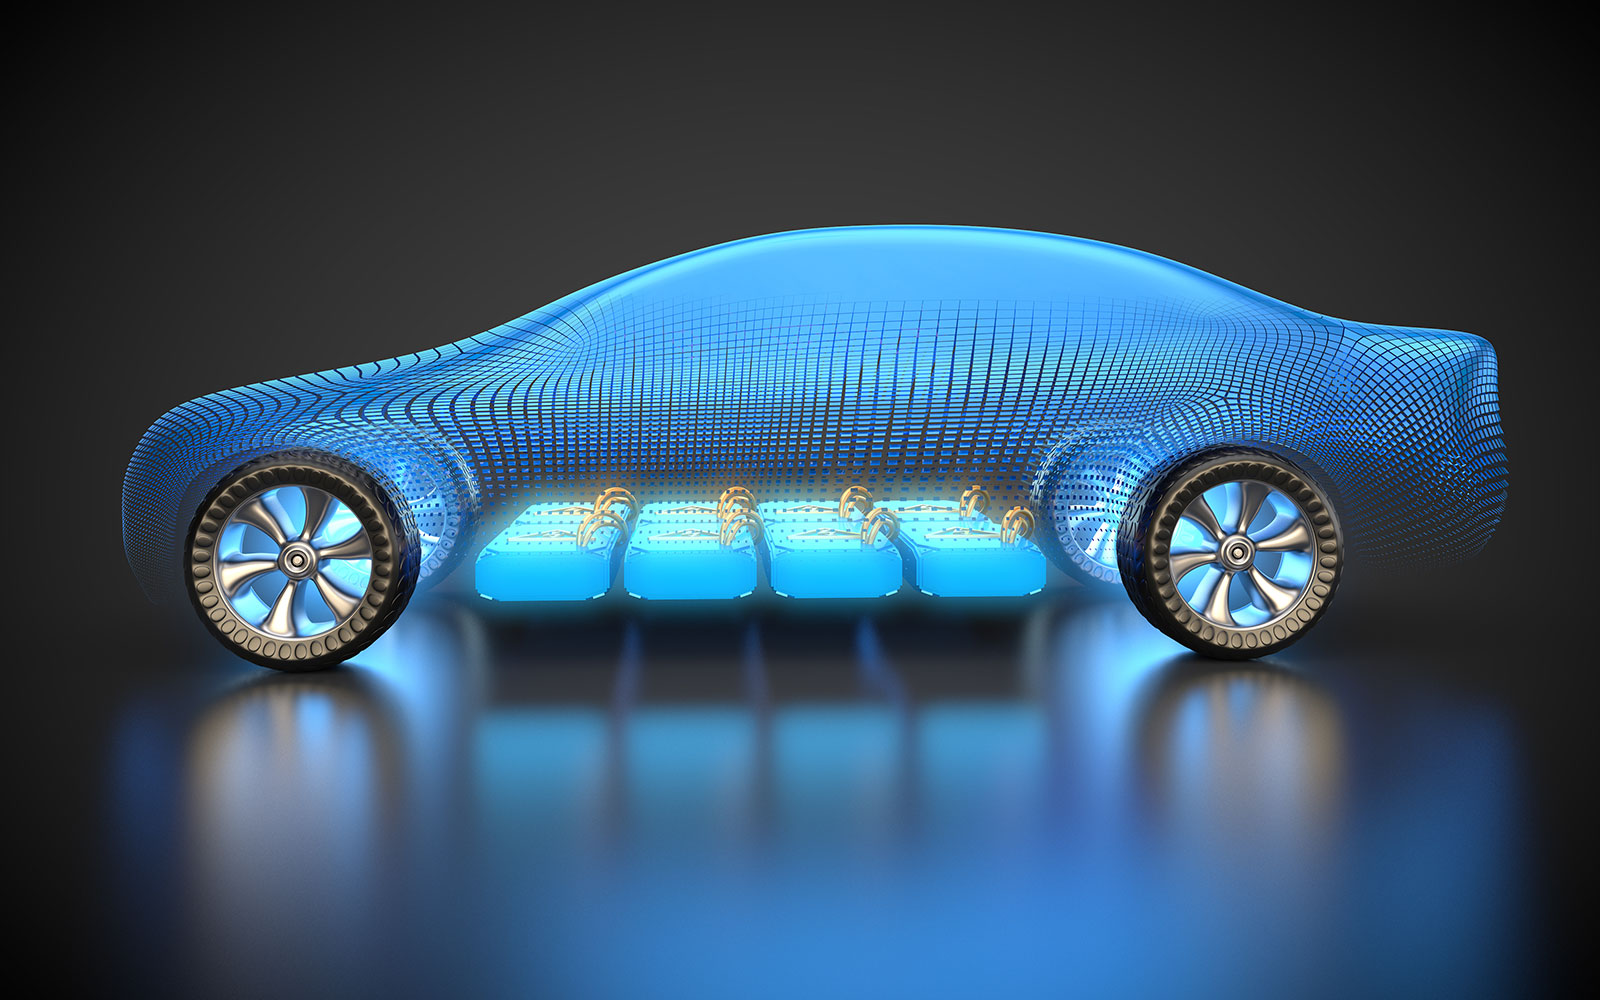 Batterien sind geeignete Energiespeichersysteme in einer Vielzahl von Fahrzeugen, spielen jedoch bei Elektroautos eine Schlüsselrolle.